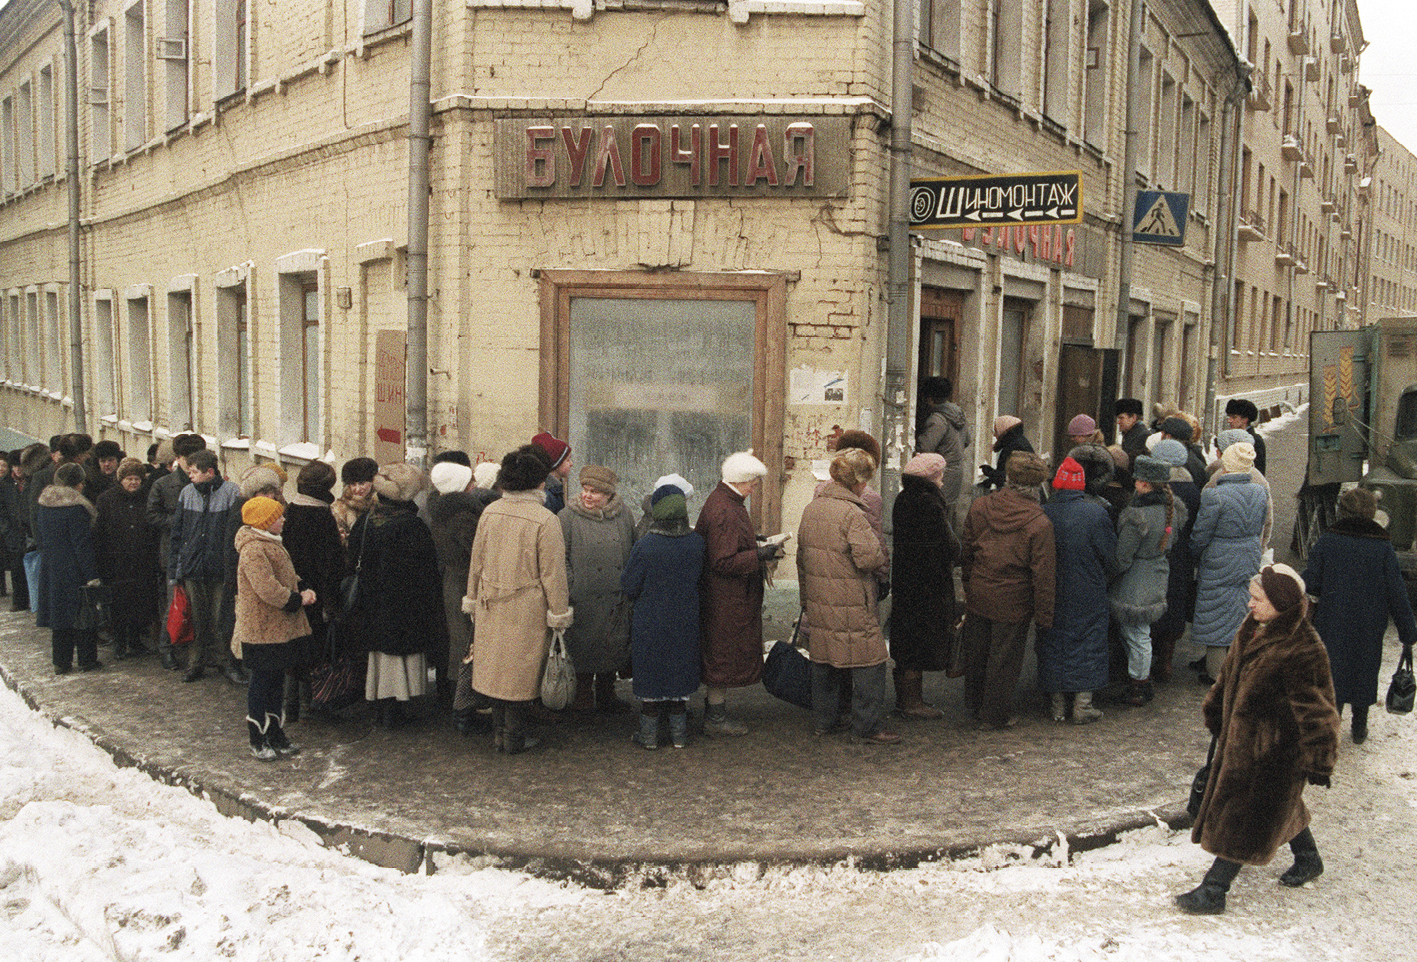 Fotografia. Pessoas em uma longa fila em um estabelecimento de esquina. Todos estão de casaco e touca ou chapéu de frio. Na rua há neve.